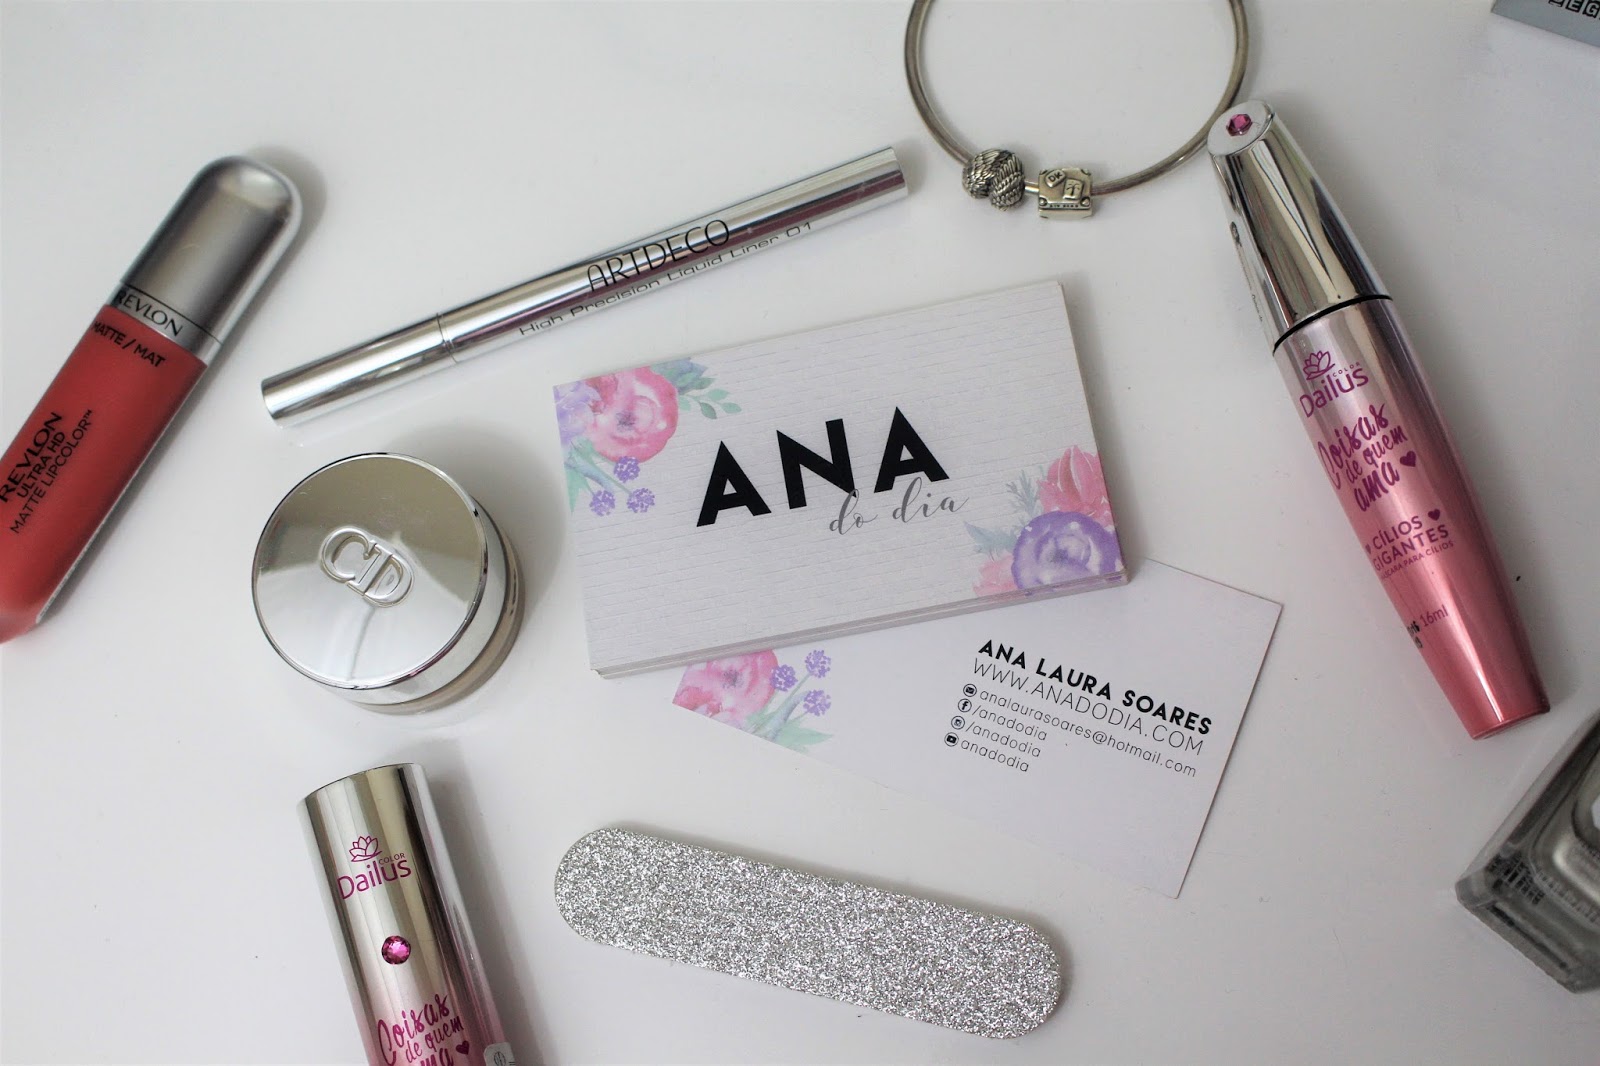 Ana do dia cartão blogueira blog com batom dailus pandora prata e rosa